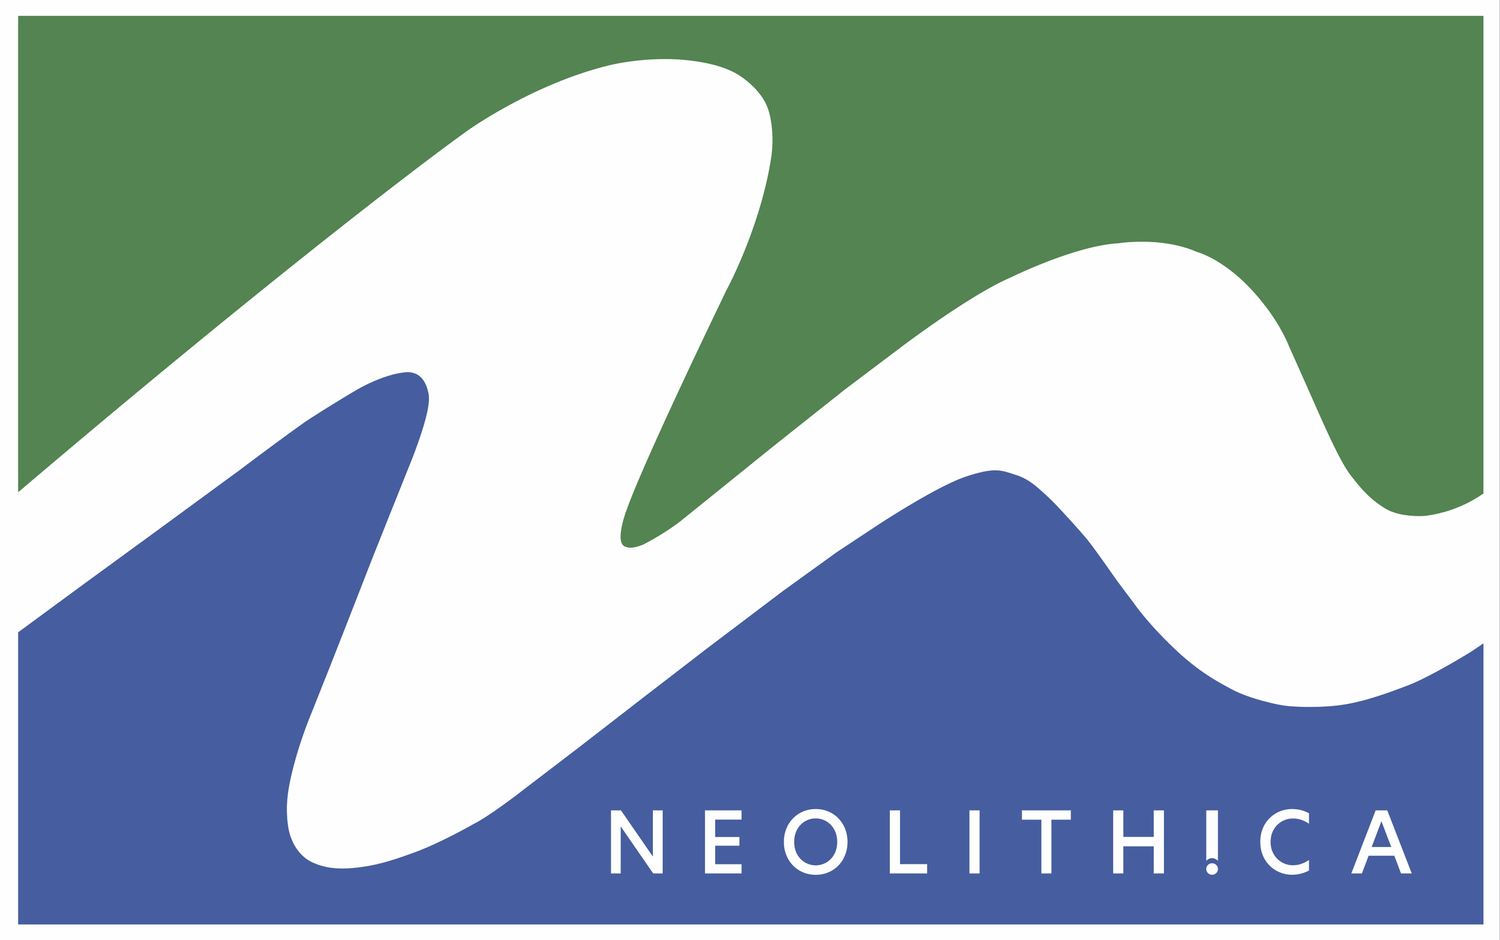 NeoLithica Ltd.